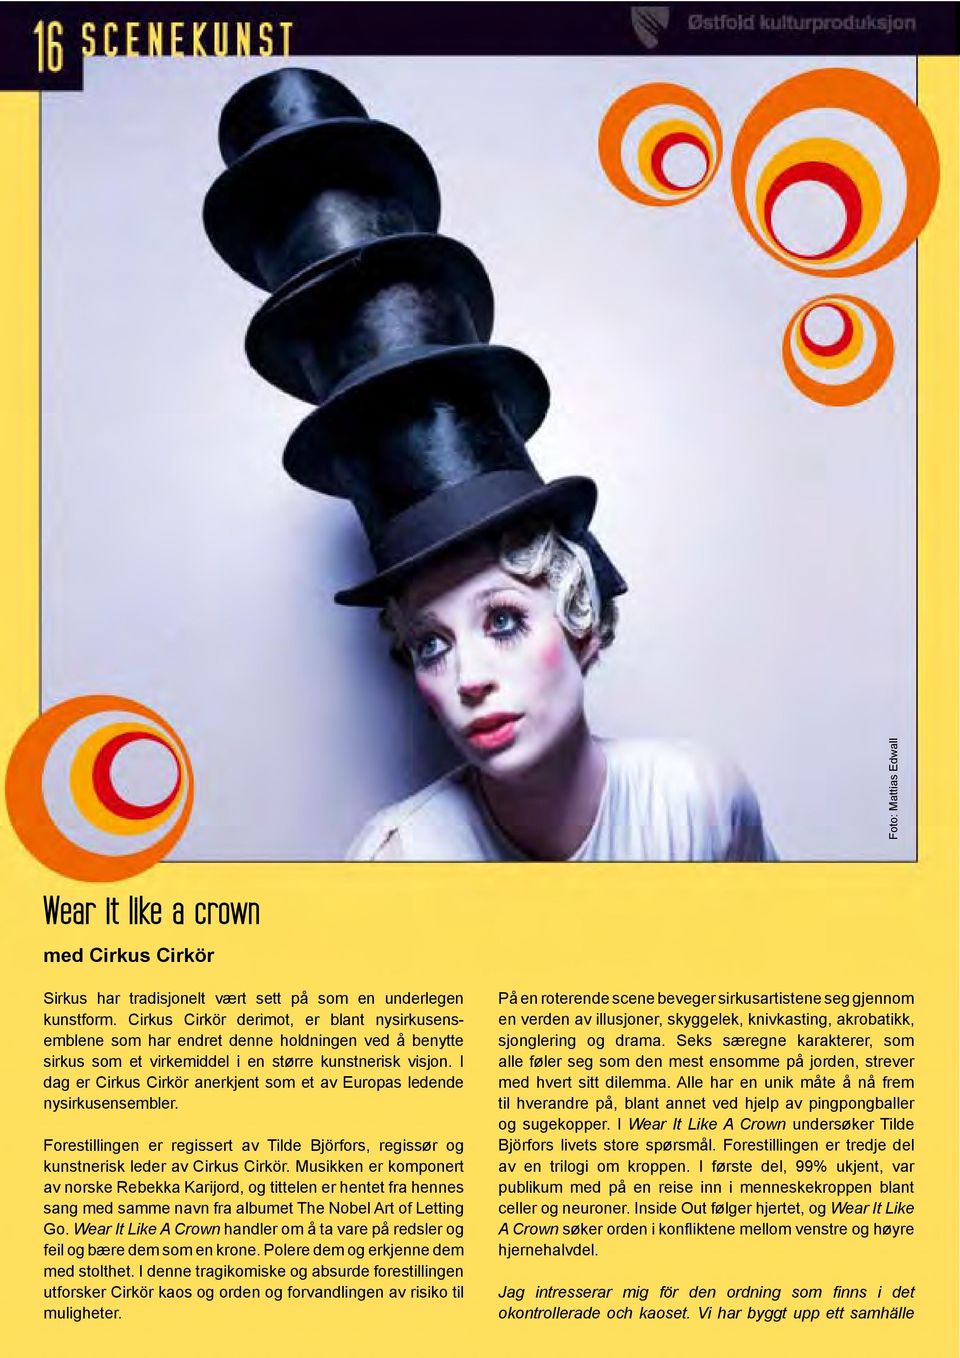 I dag er Cirkus Cirkör anerkjent som et av Europas ledende nysirkusensembler. Forestillingen er regissert av Tilde Björfors, regissør og kunstnerisk leder av Cirkus Cirkör.